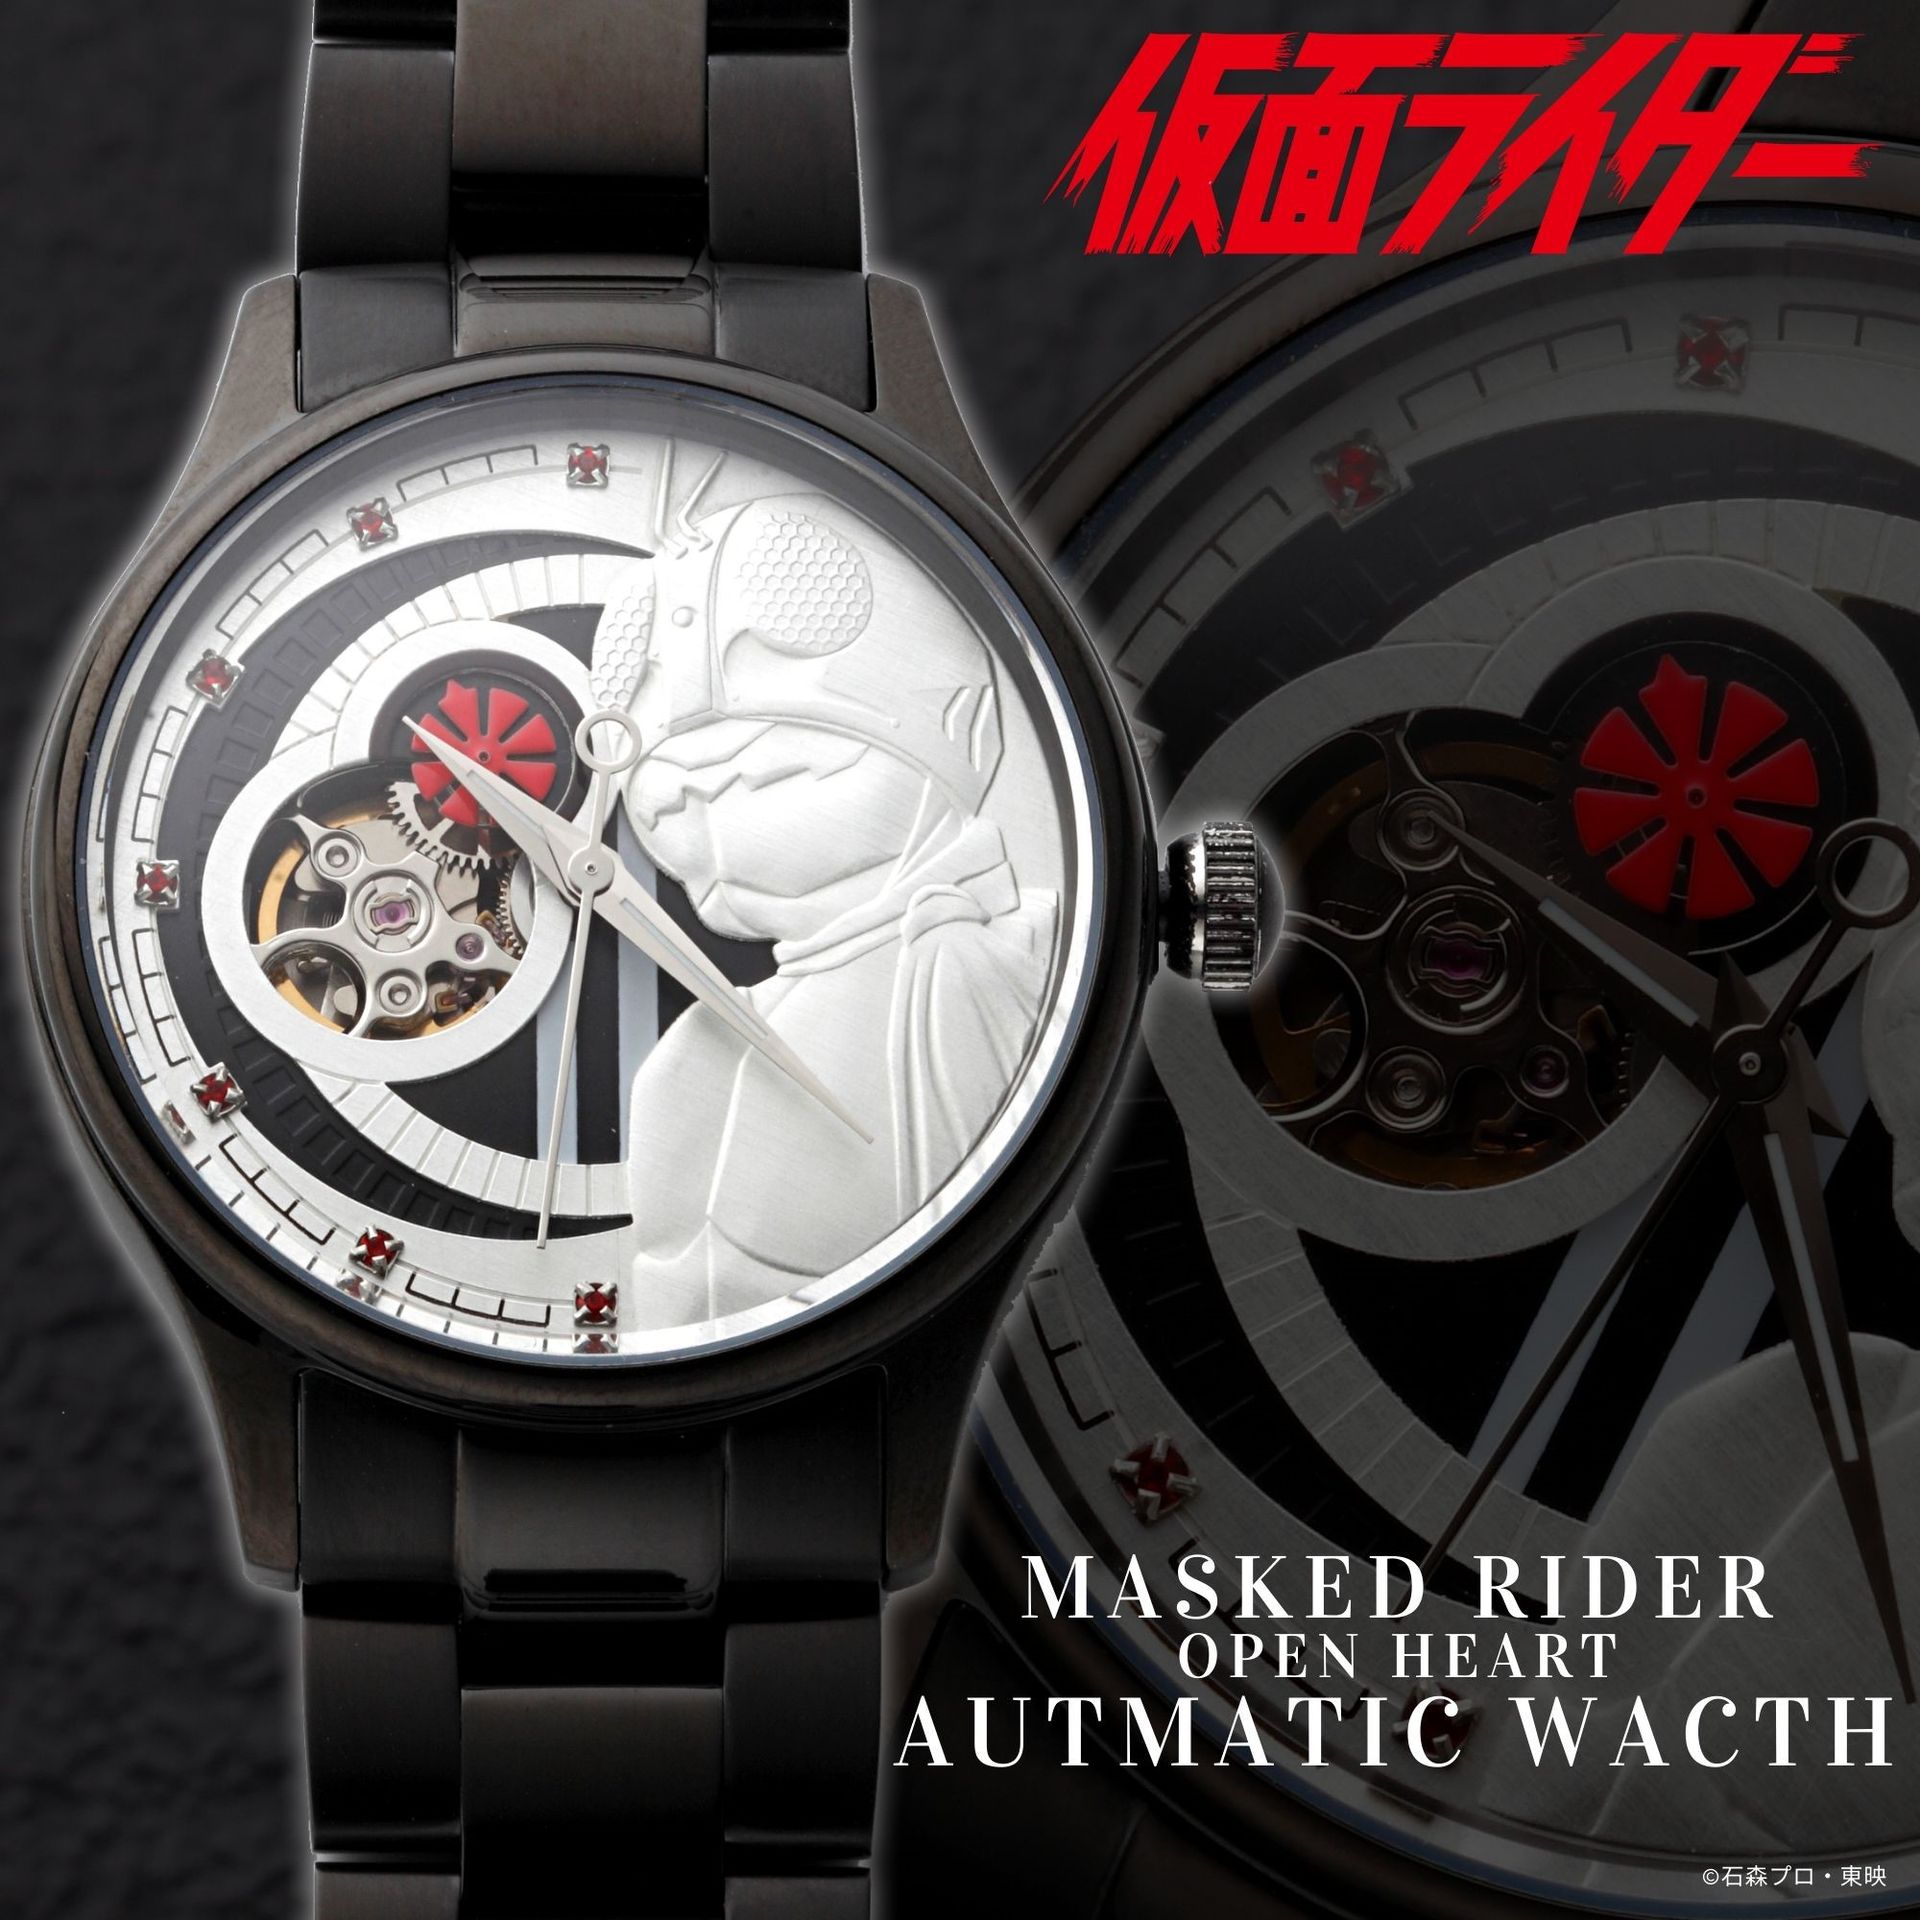 仮面ライダー1号 レリーフオープンハート腕時計 が登場 Game Watch